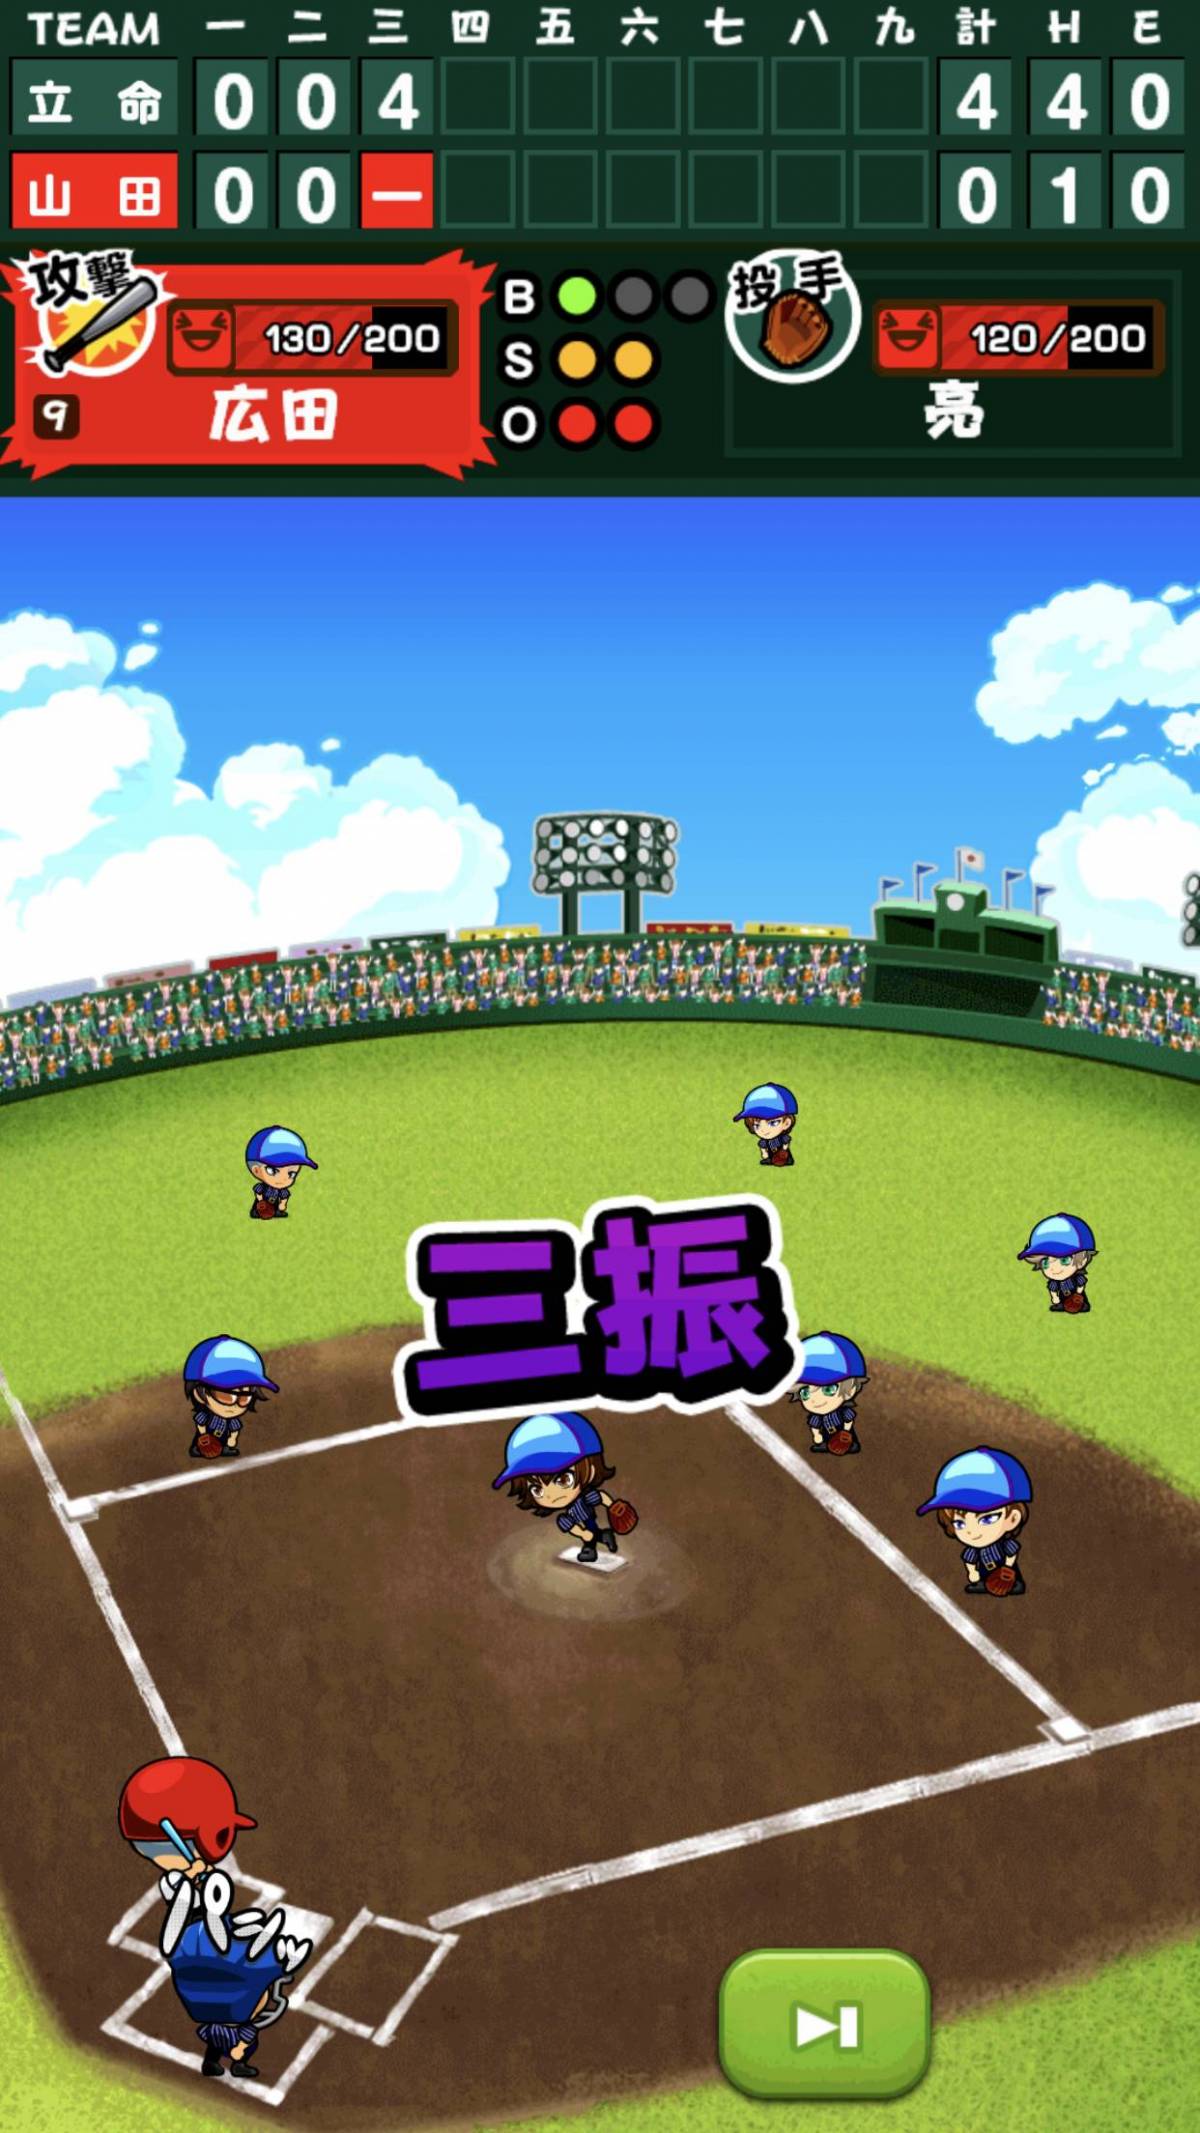 スマホで熱闘開幕 高校野球がテーマのおすすめゲームアプリ5選 Appliv Topics